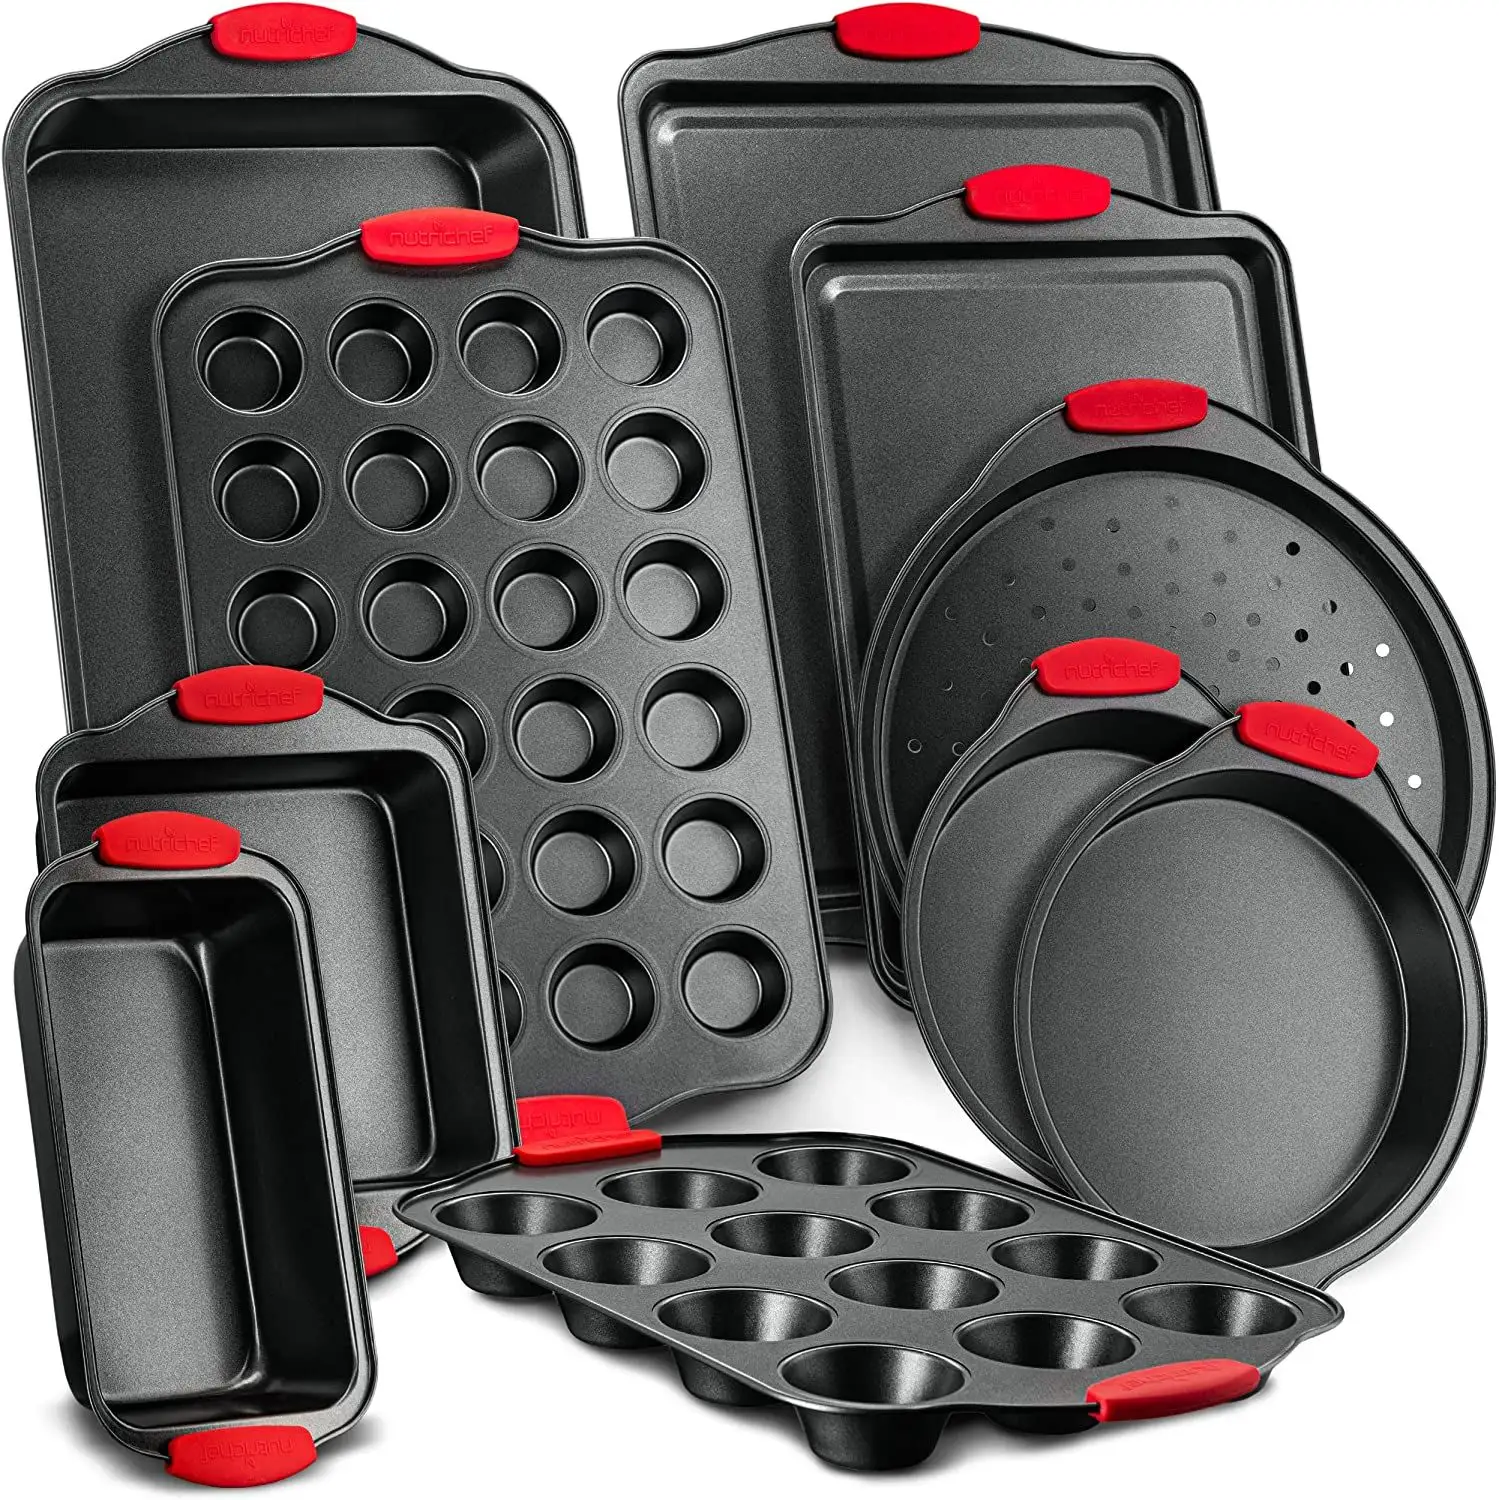 Özelleştirmek pişirme setleri fırın Bakeware yapışmaz karbon çelik 10 adet yüksek sıcaklık dayanımı silikon kolu ile Bakeware Set